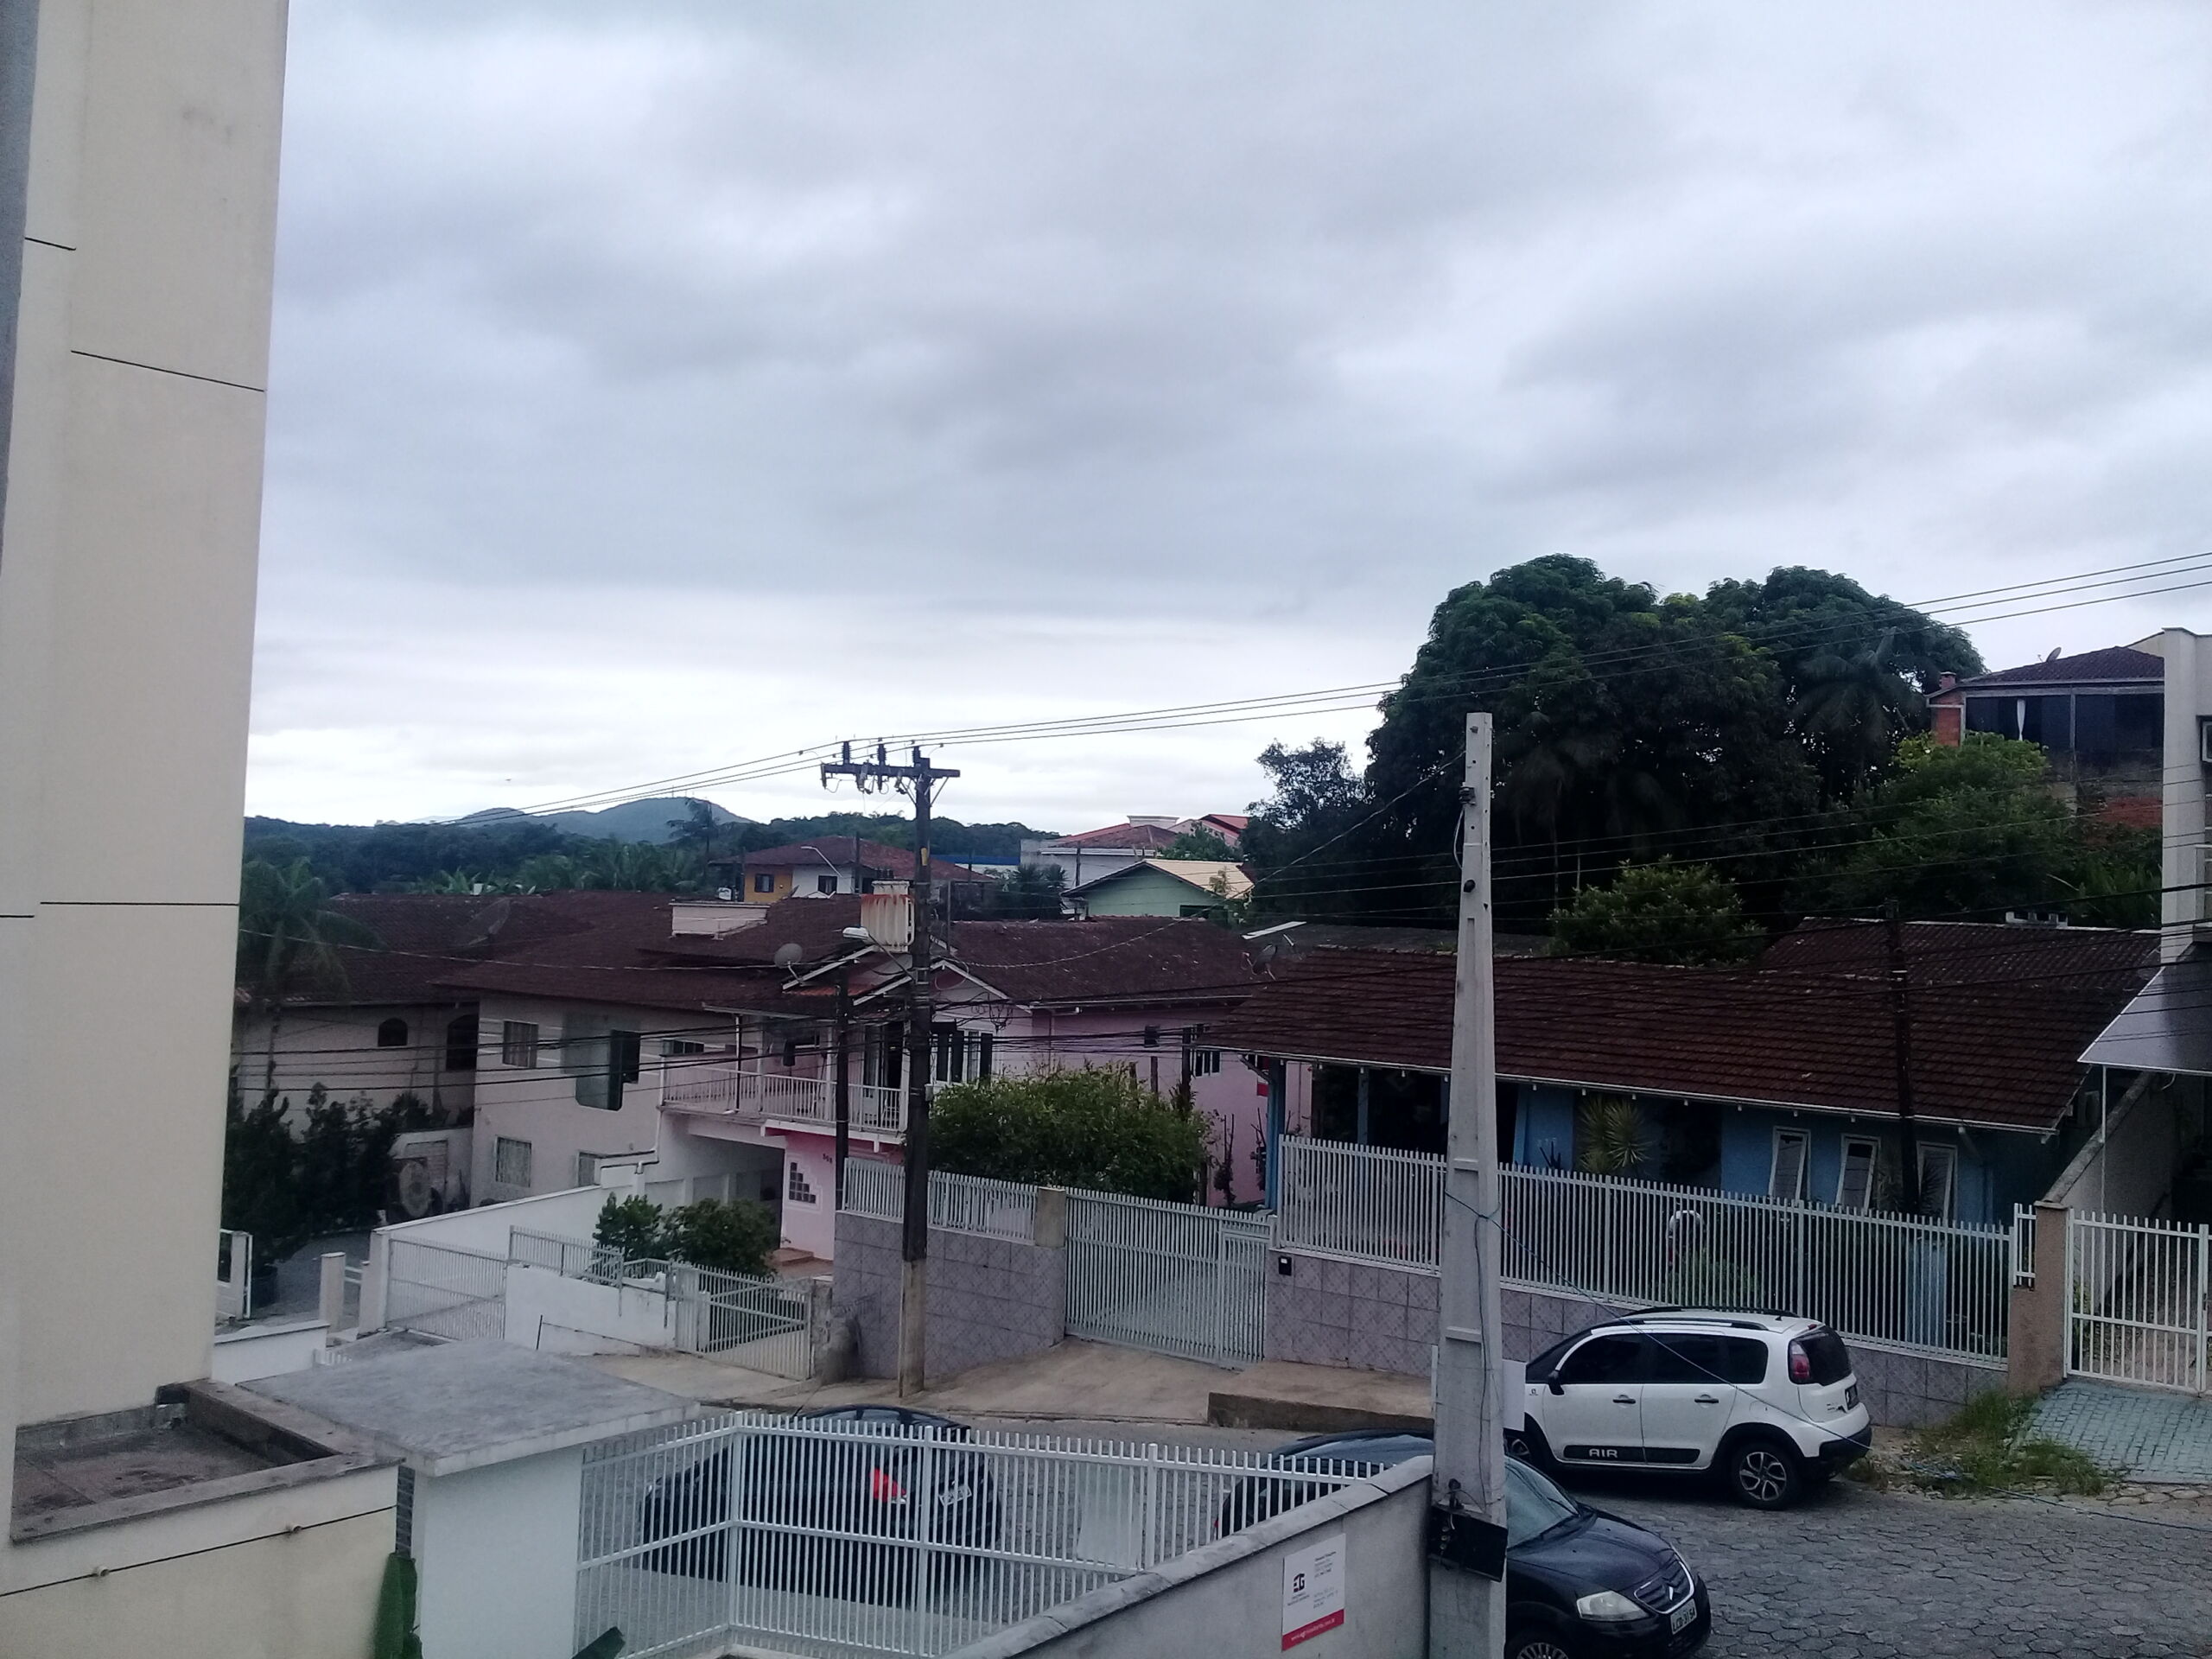 Sobrado Geminado – 3 dormitórios(1 suite) – Lugar alto – Vista panorâmica – Nova Brasília